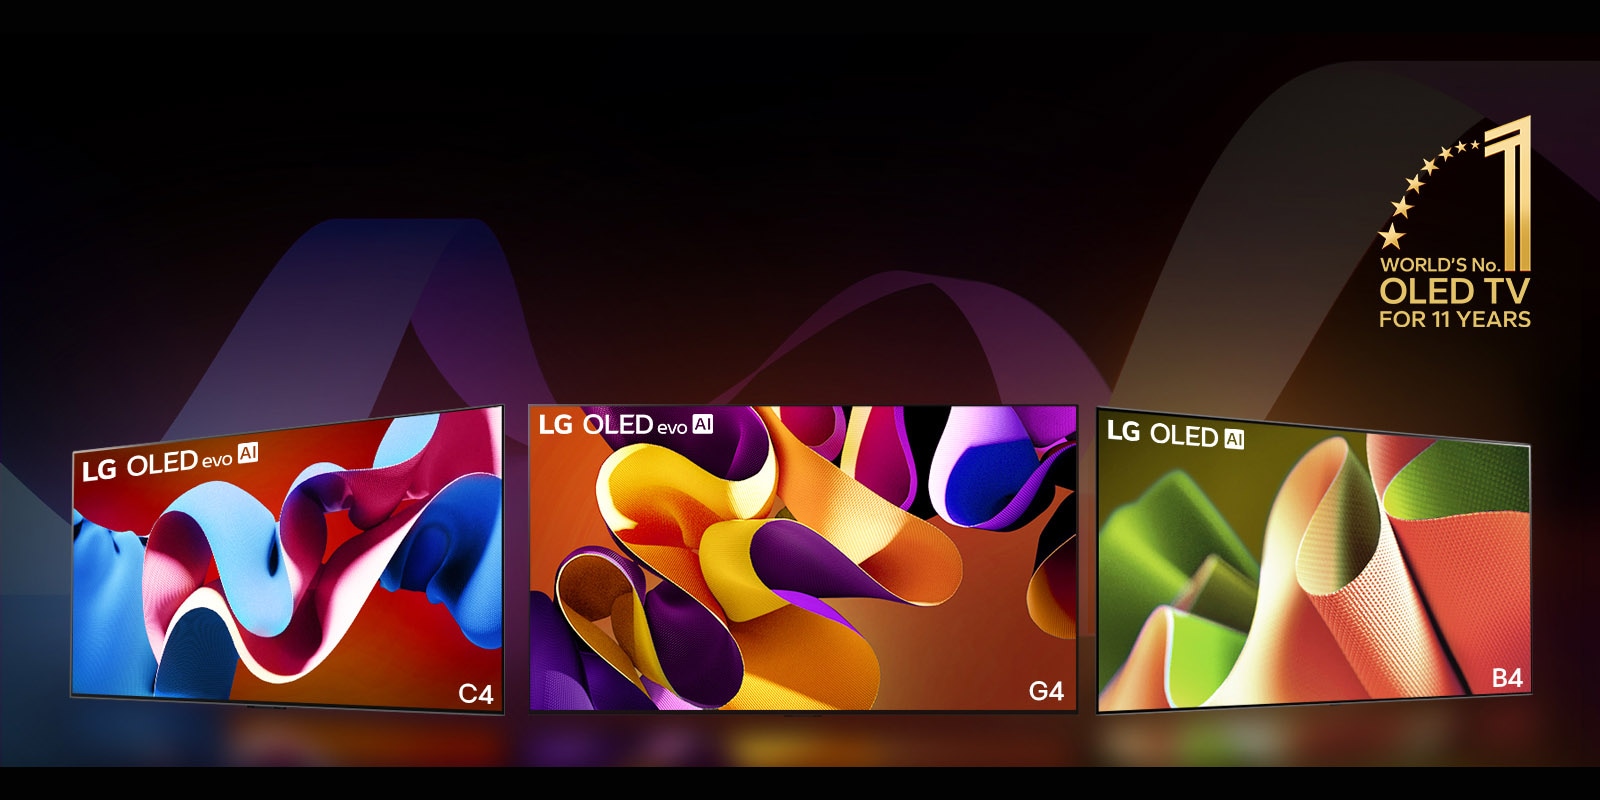 LG OLED evo televizori C4, evo G4 un B4 rindā uz melna fona ar krāsainiem apļveida rakstiem. Attēlā parādīta "World's number 1 OLED TV for 11 Years" emblēma.  Atruna: "Avots: Omdia. Piegādātie televizori, no 2013. g. līdz 2023. g. Rezultāti nav uzskatāmi par LG Electronics ieteikumu. Jebkāda paļaušanās uz šiem rezultātiem nozīmē, ka risku uzņemas attiecīgā trešā puse. Apmeklējiet https://www.omdia.com/, lai iegūtu papildu informāciju."